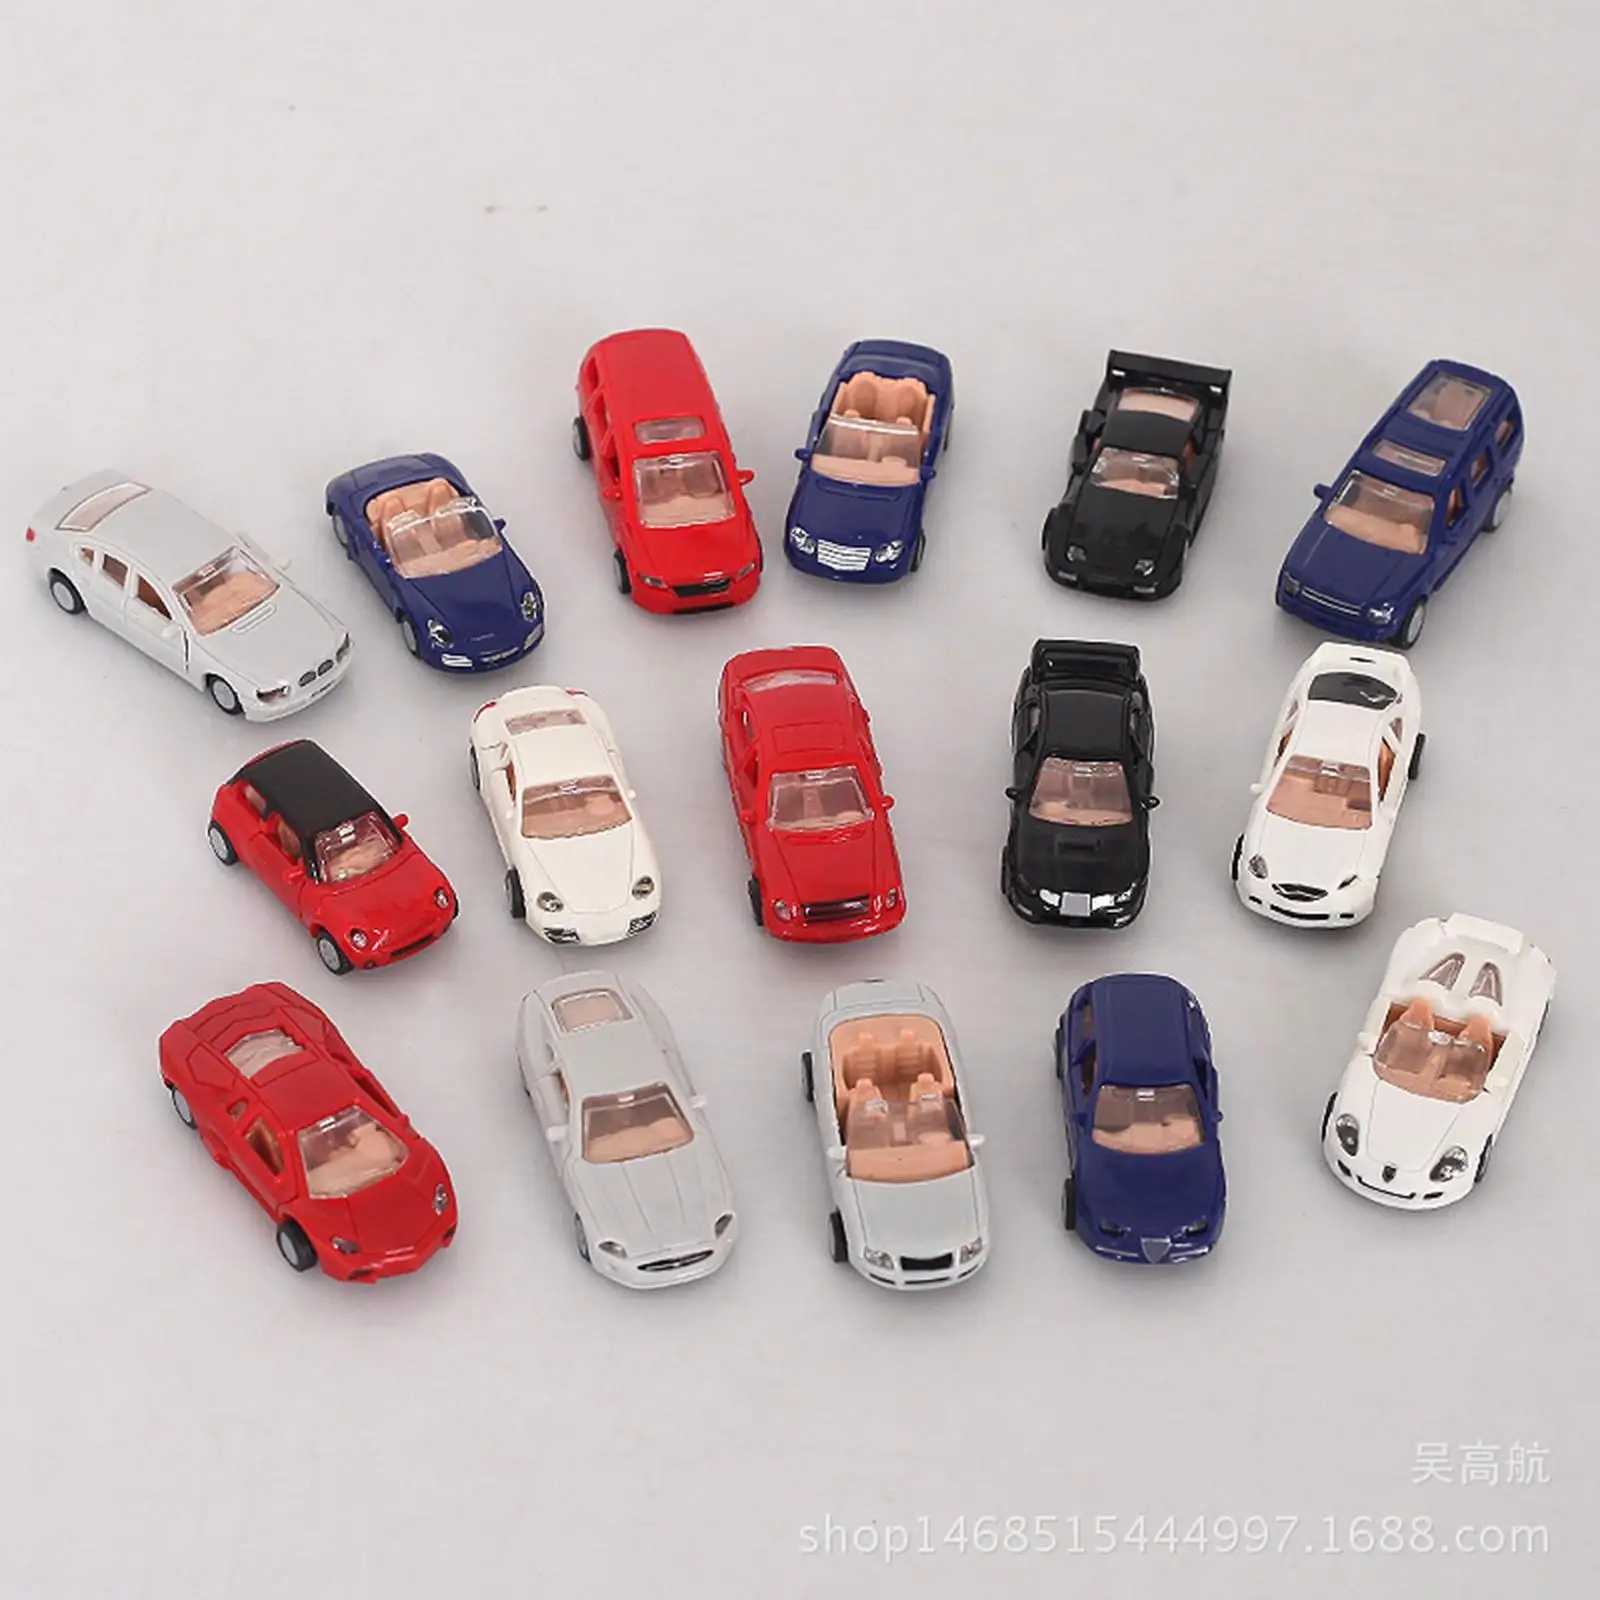 16x Assemble car Construction Micro Landscape Puzzle Children Toy DIY Puzzle Vehicle Model /87 Car Playthings